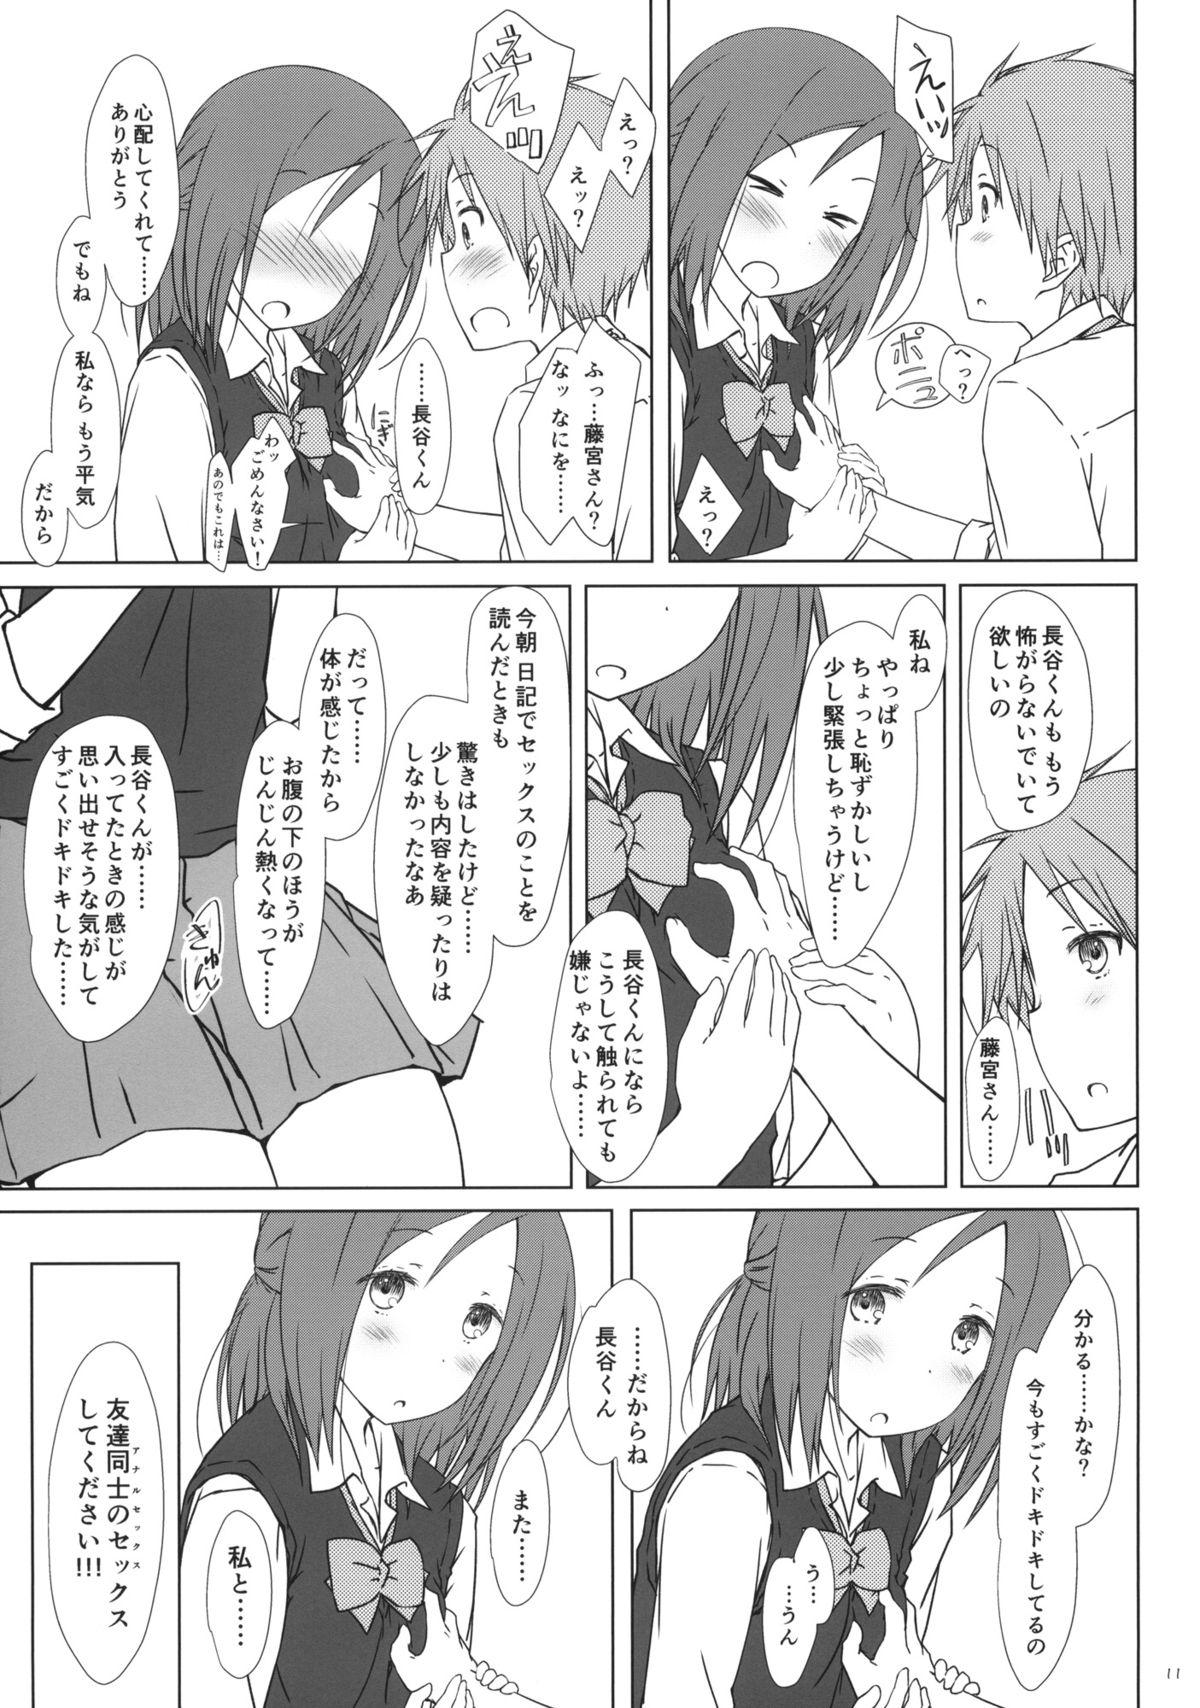 Gaypawn "Tomodachi to no Sex no Tsuzuki no sorekara." + Paper - One week friends Student - Page 10